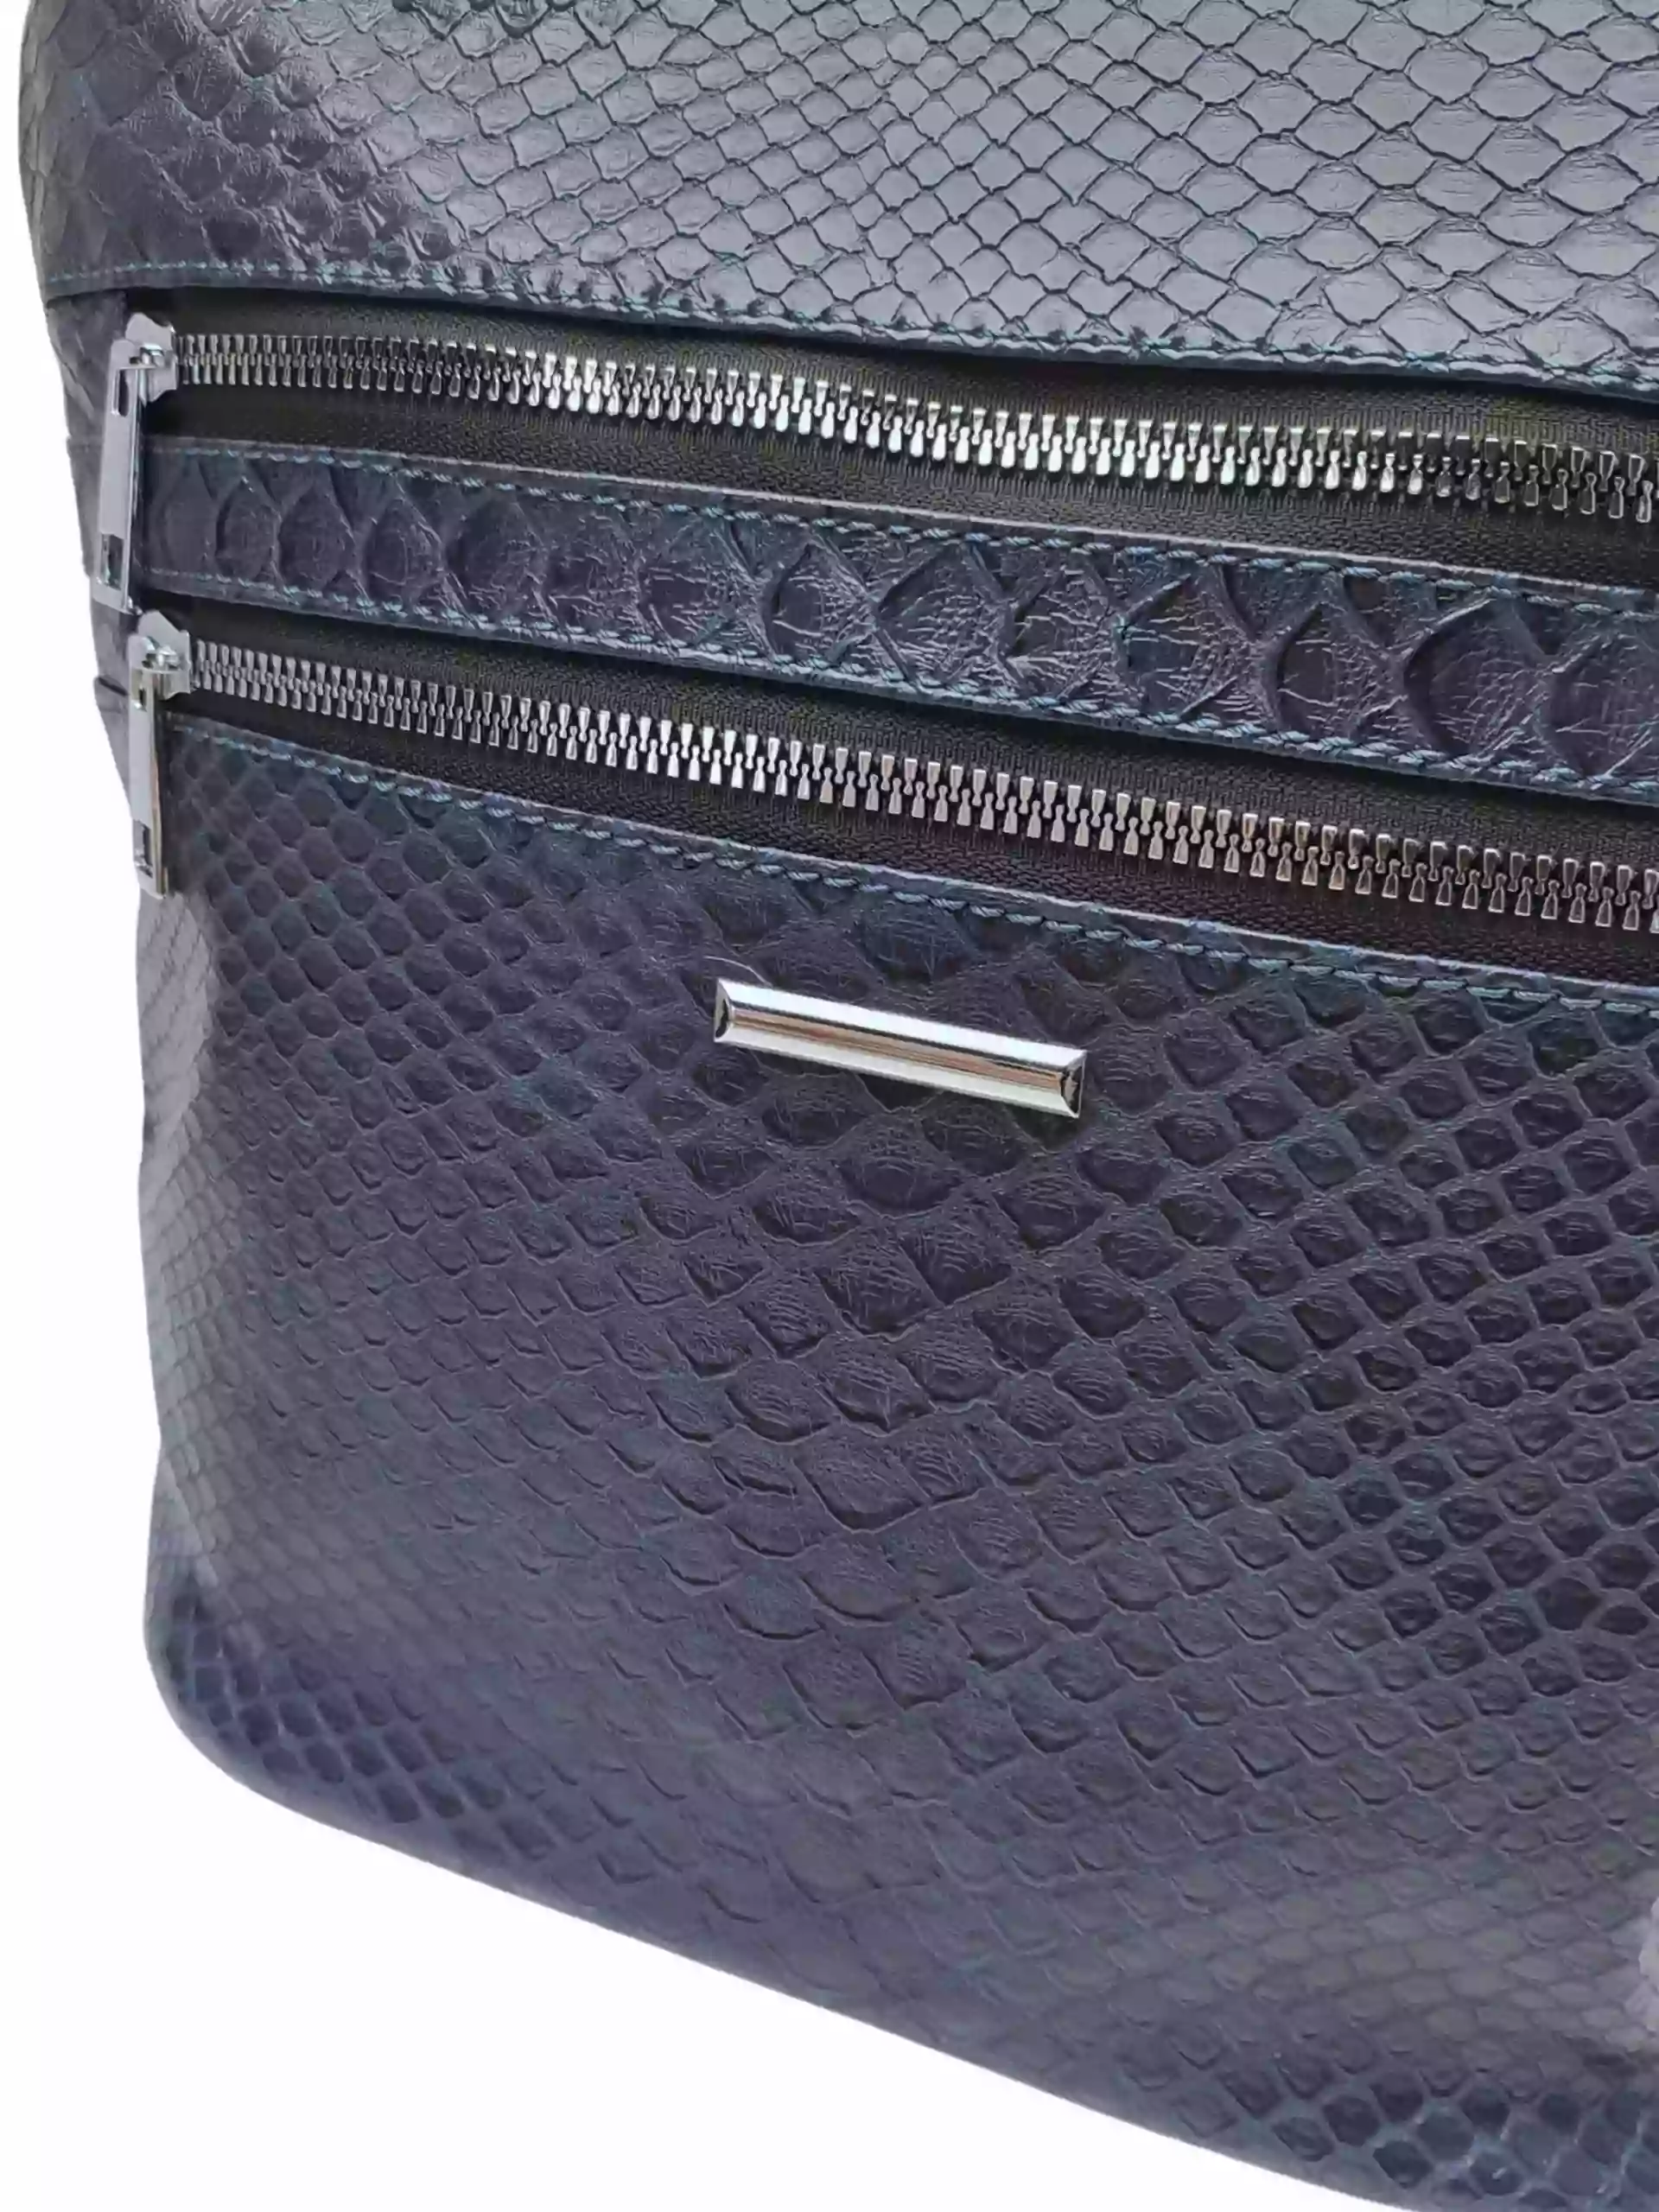 Tmavě modrá crossbody kabelka s imitací hadí kůže, New Berry, HB-093, detail crossbody kabelky